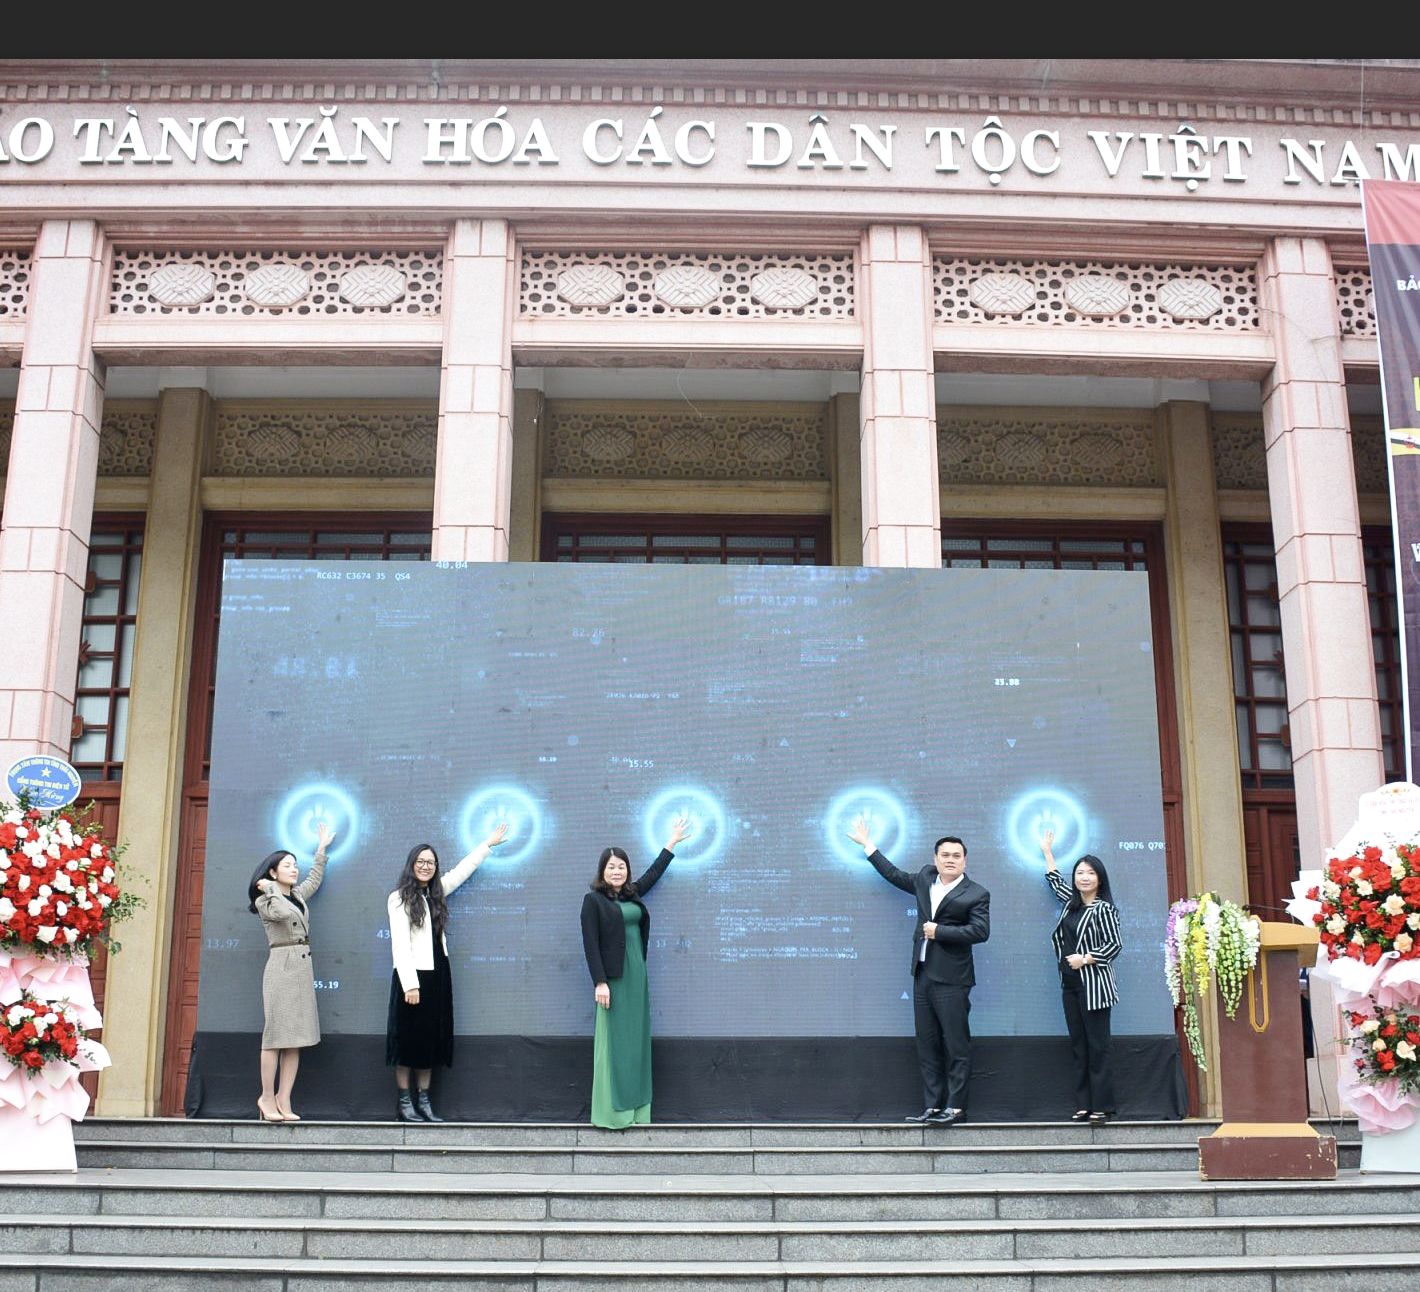 Trưng bày “Thủ công mỹ nghệ ASEAN gắn với bảo vệ môi trường” tại Bảo tàng Văn hóa các dân tộc Việt Nam